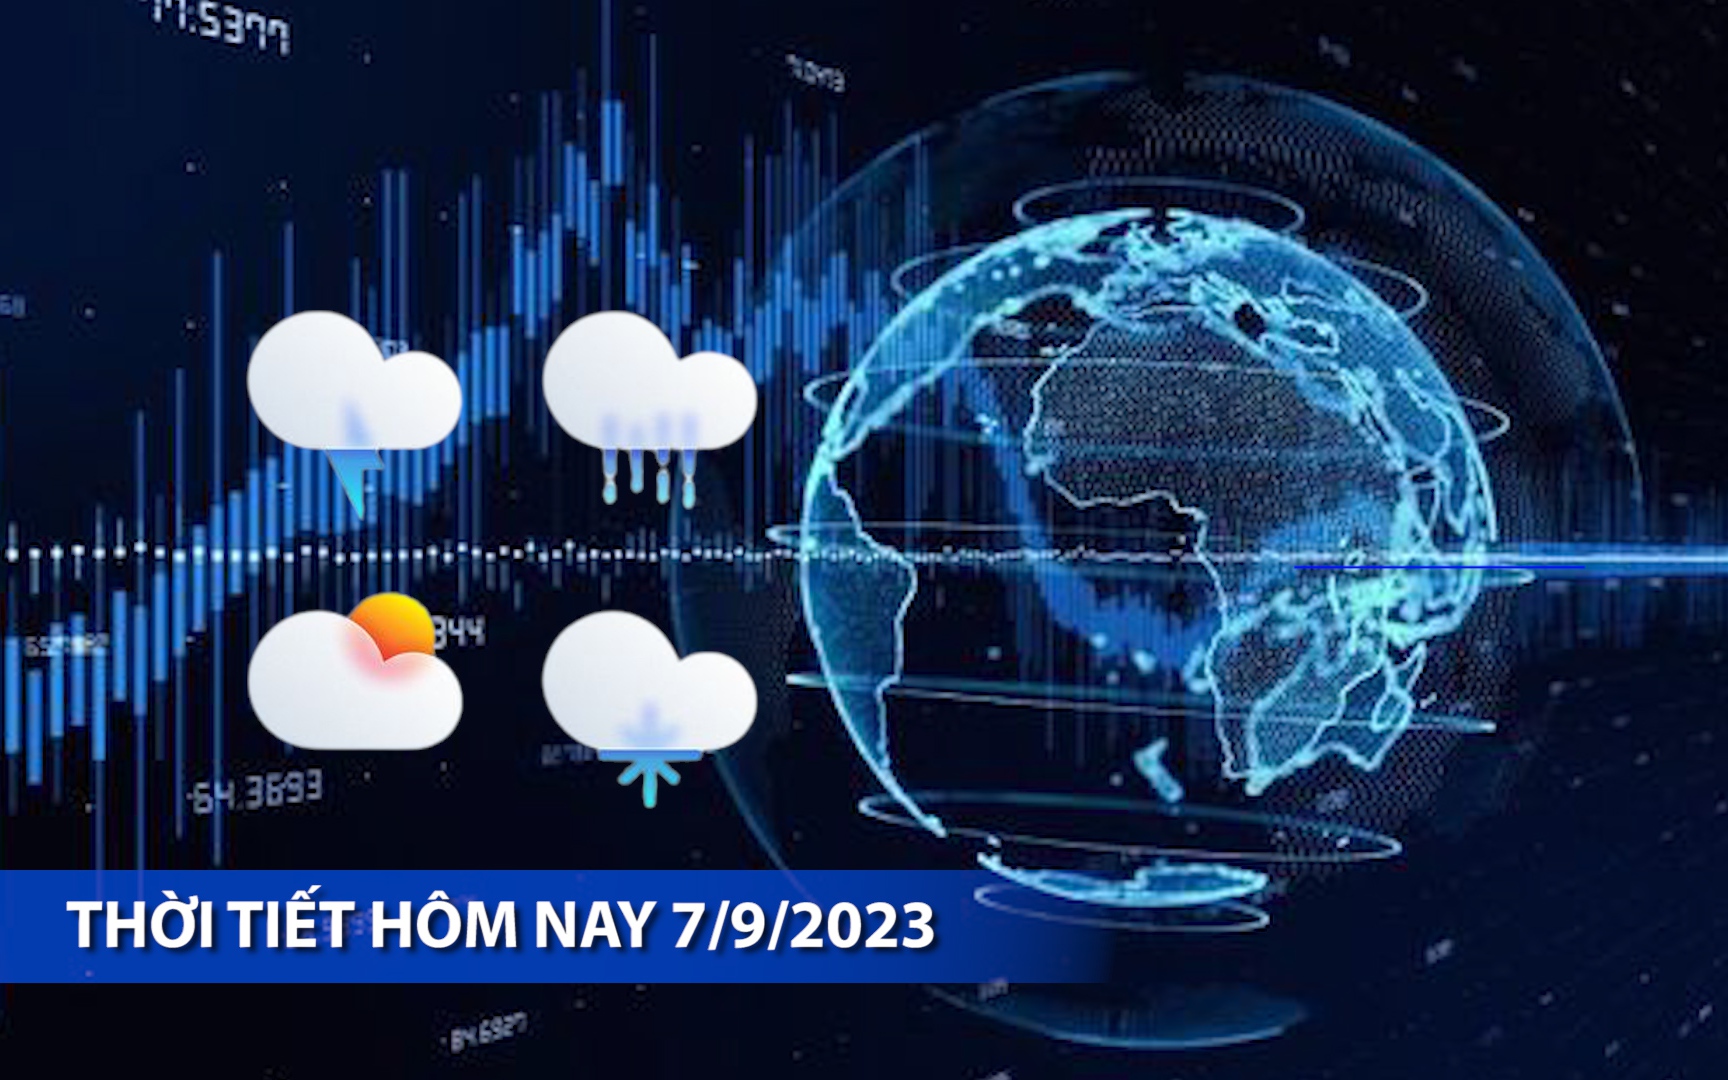 Thời tiết hôm nay 7/9/2023: Bắc Bộ nắng nóng, Tây Nguyên và Nam Bộ mưa dông